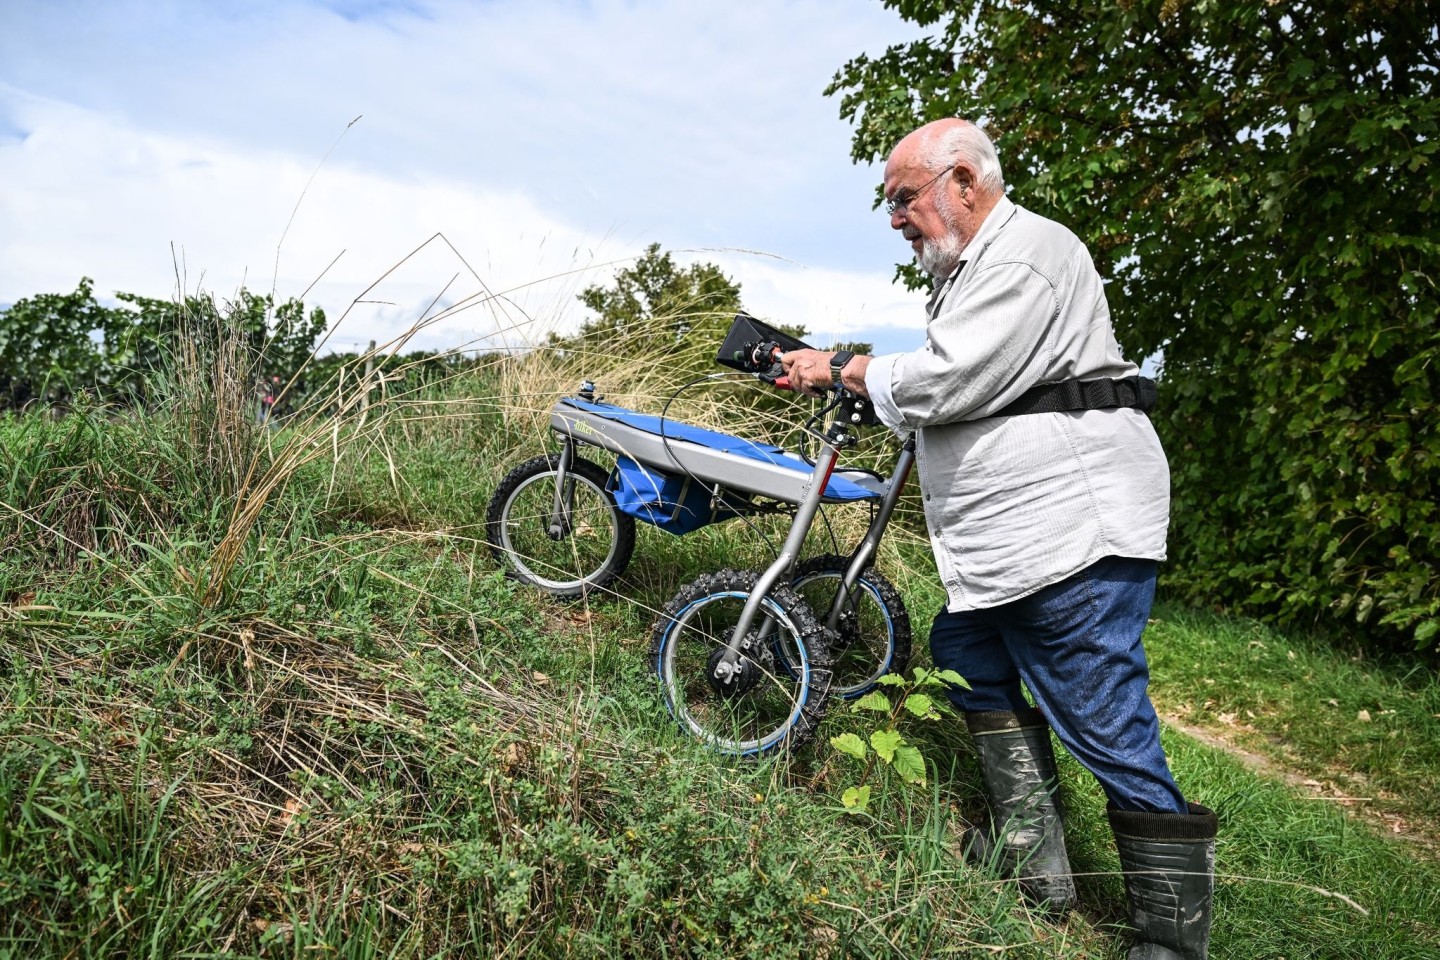 Rasen statt Rosten: 92-Jähriger erfindet Turbo-Rollator